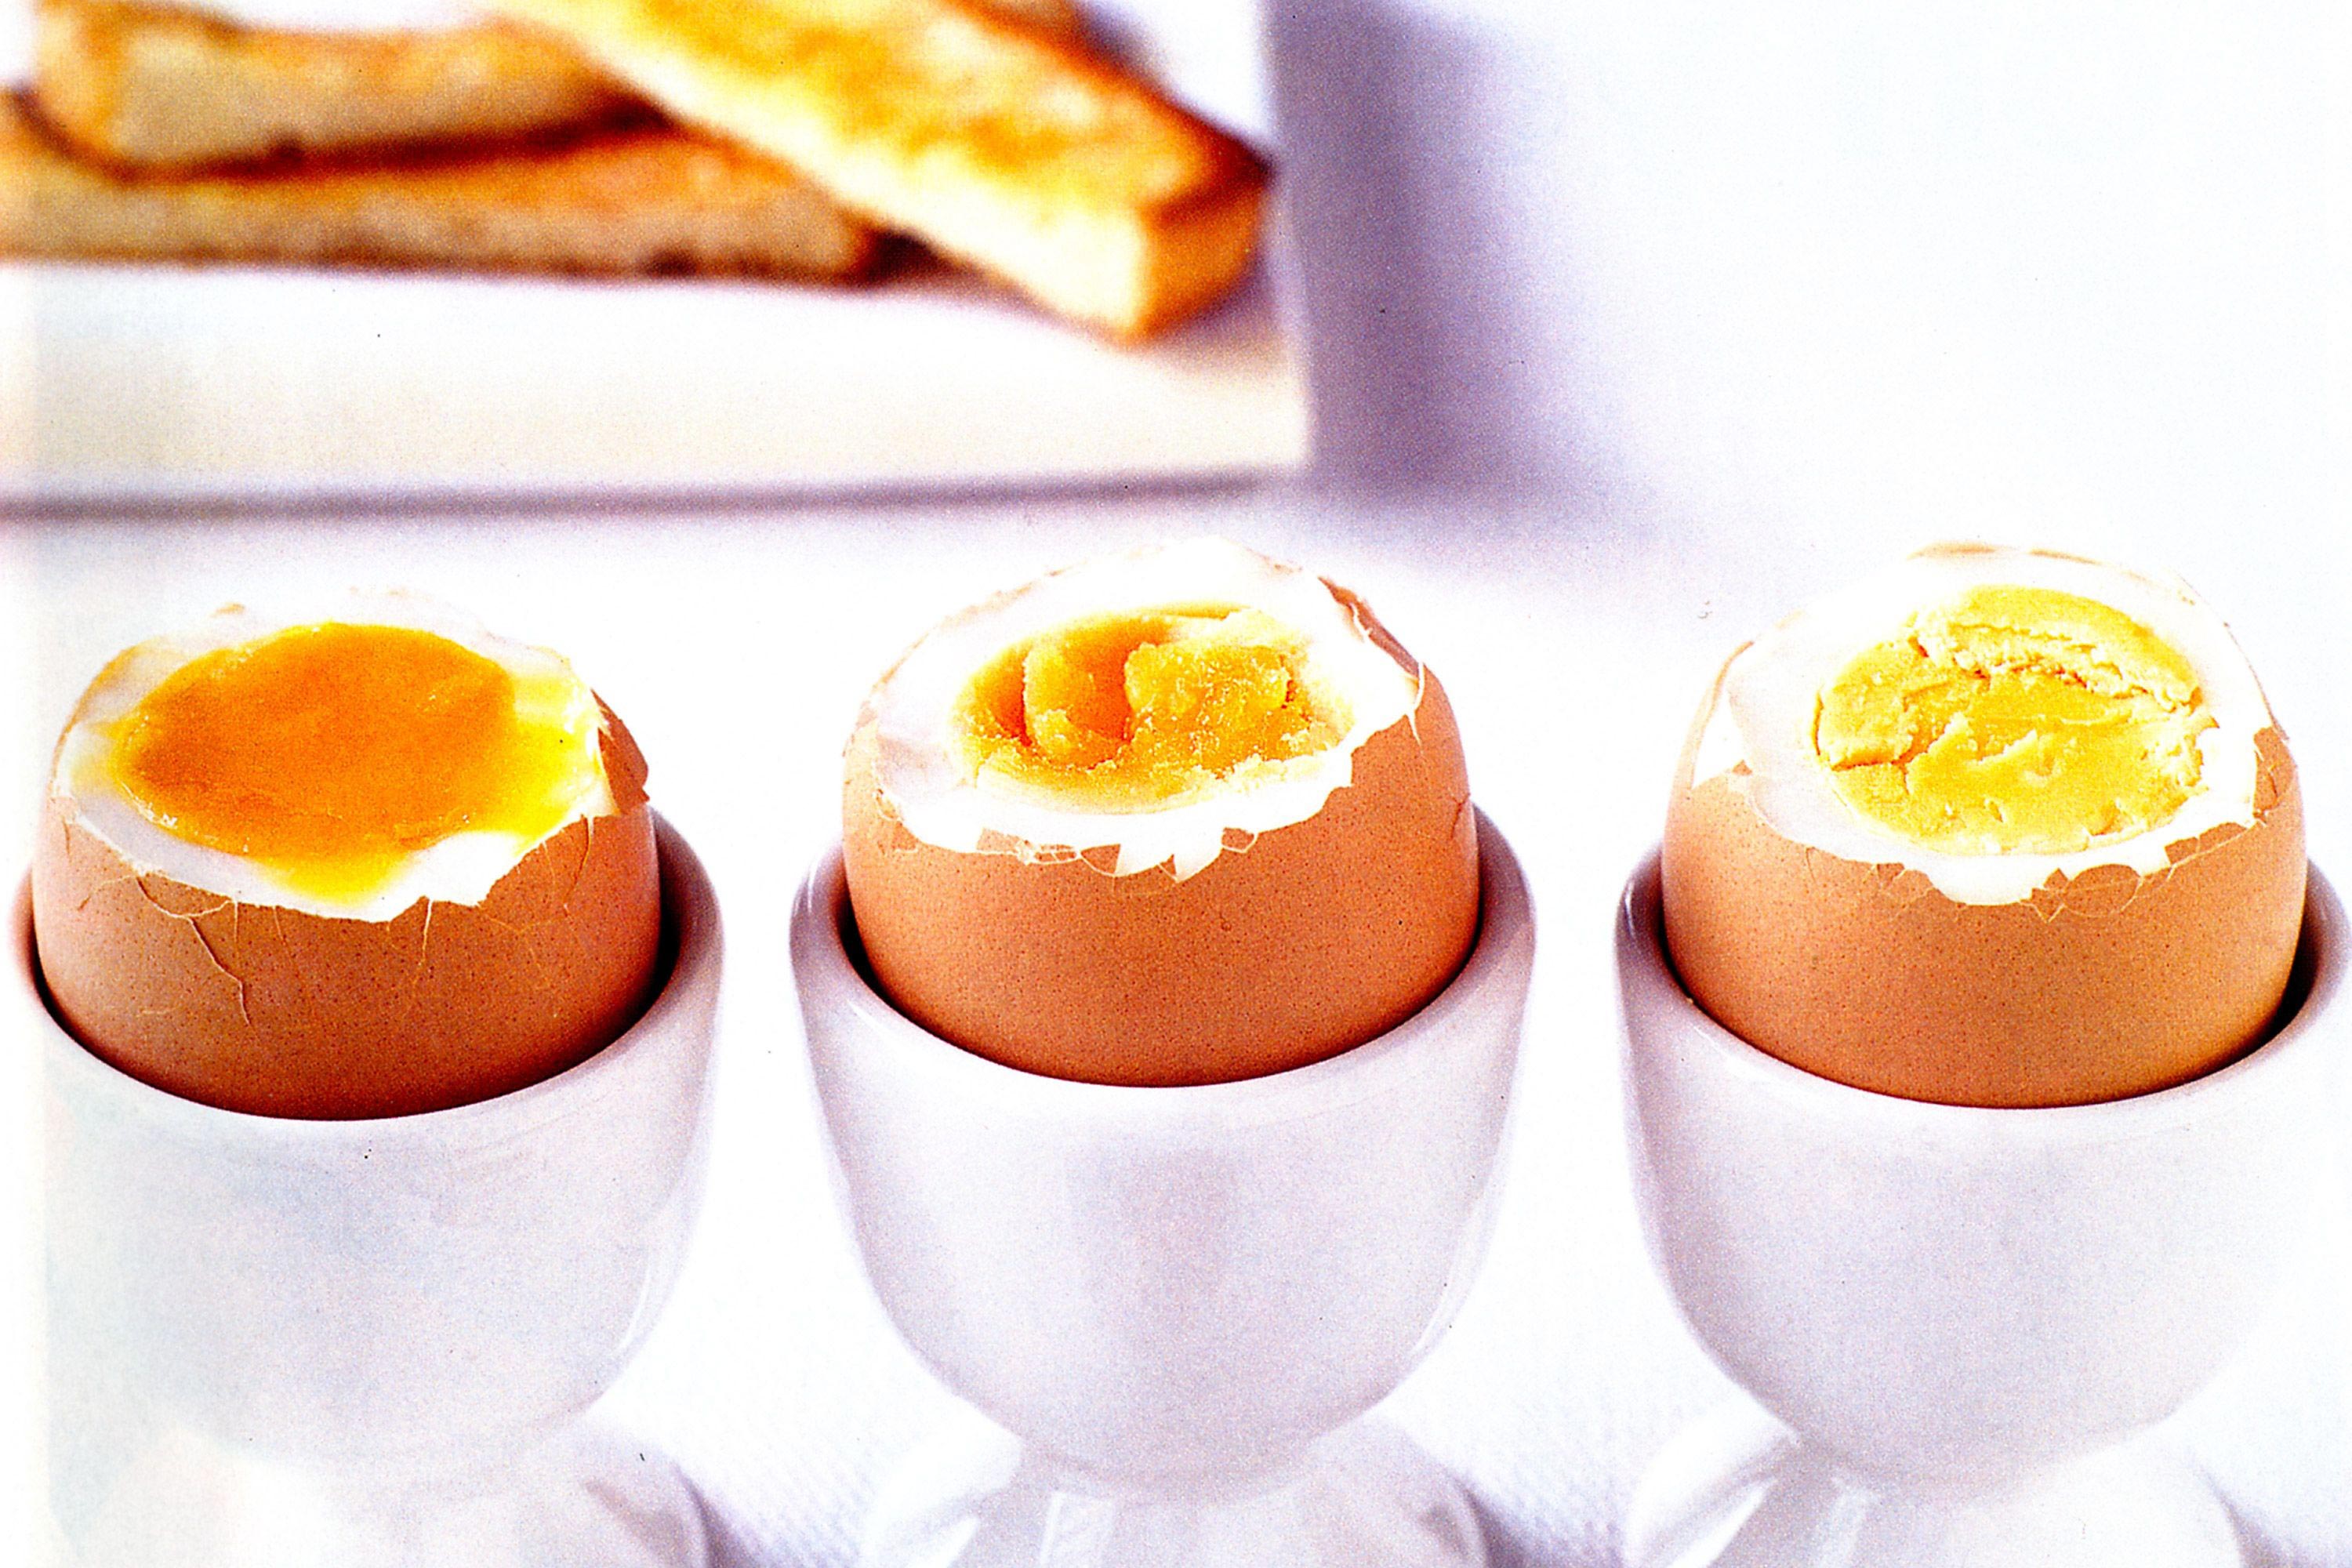 Сколько варится яйцо всмятку после закипания воды. Яйцо в смятку в мешочек и вкрутую. Яйца всмятку в мешочек и вкрутую. Яйца всмятку в мешочек. Варёные яйца всмятку и в мешочек.